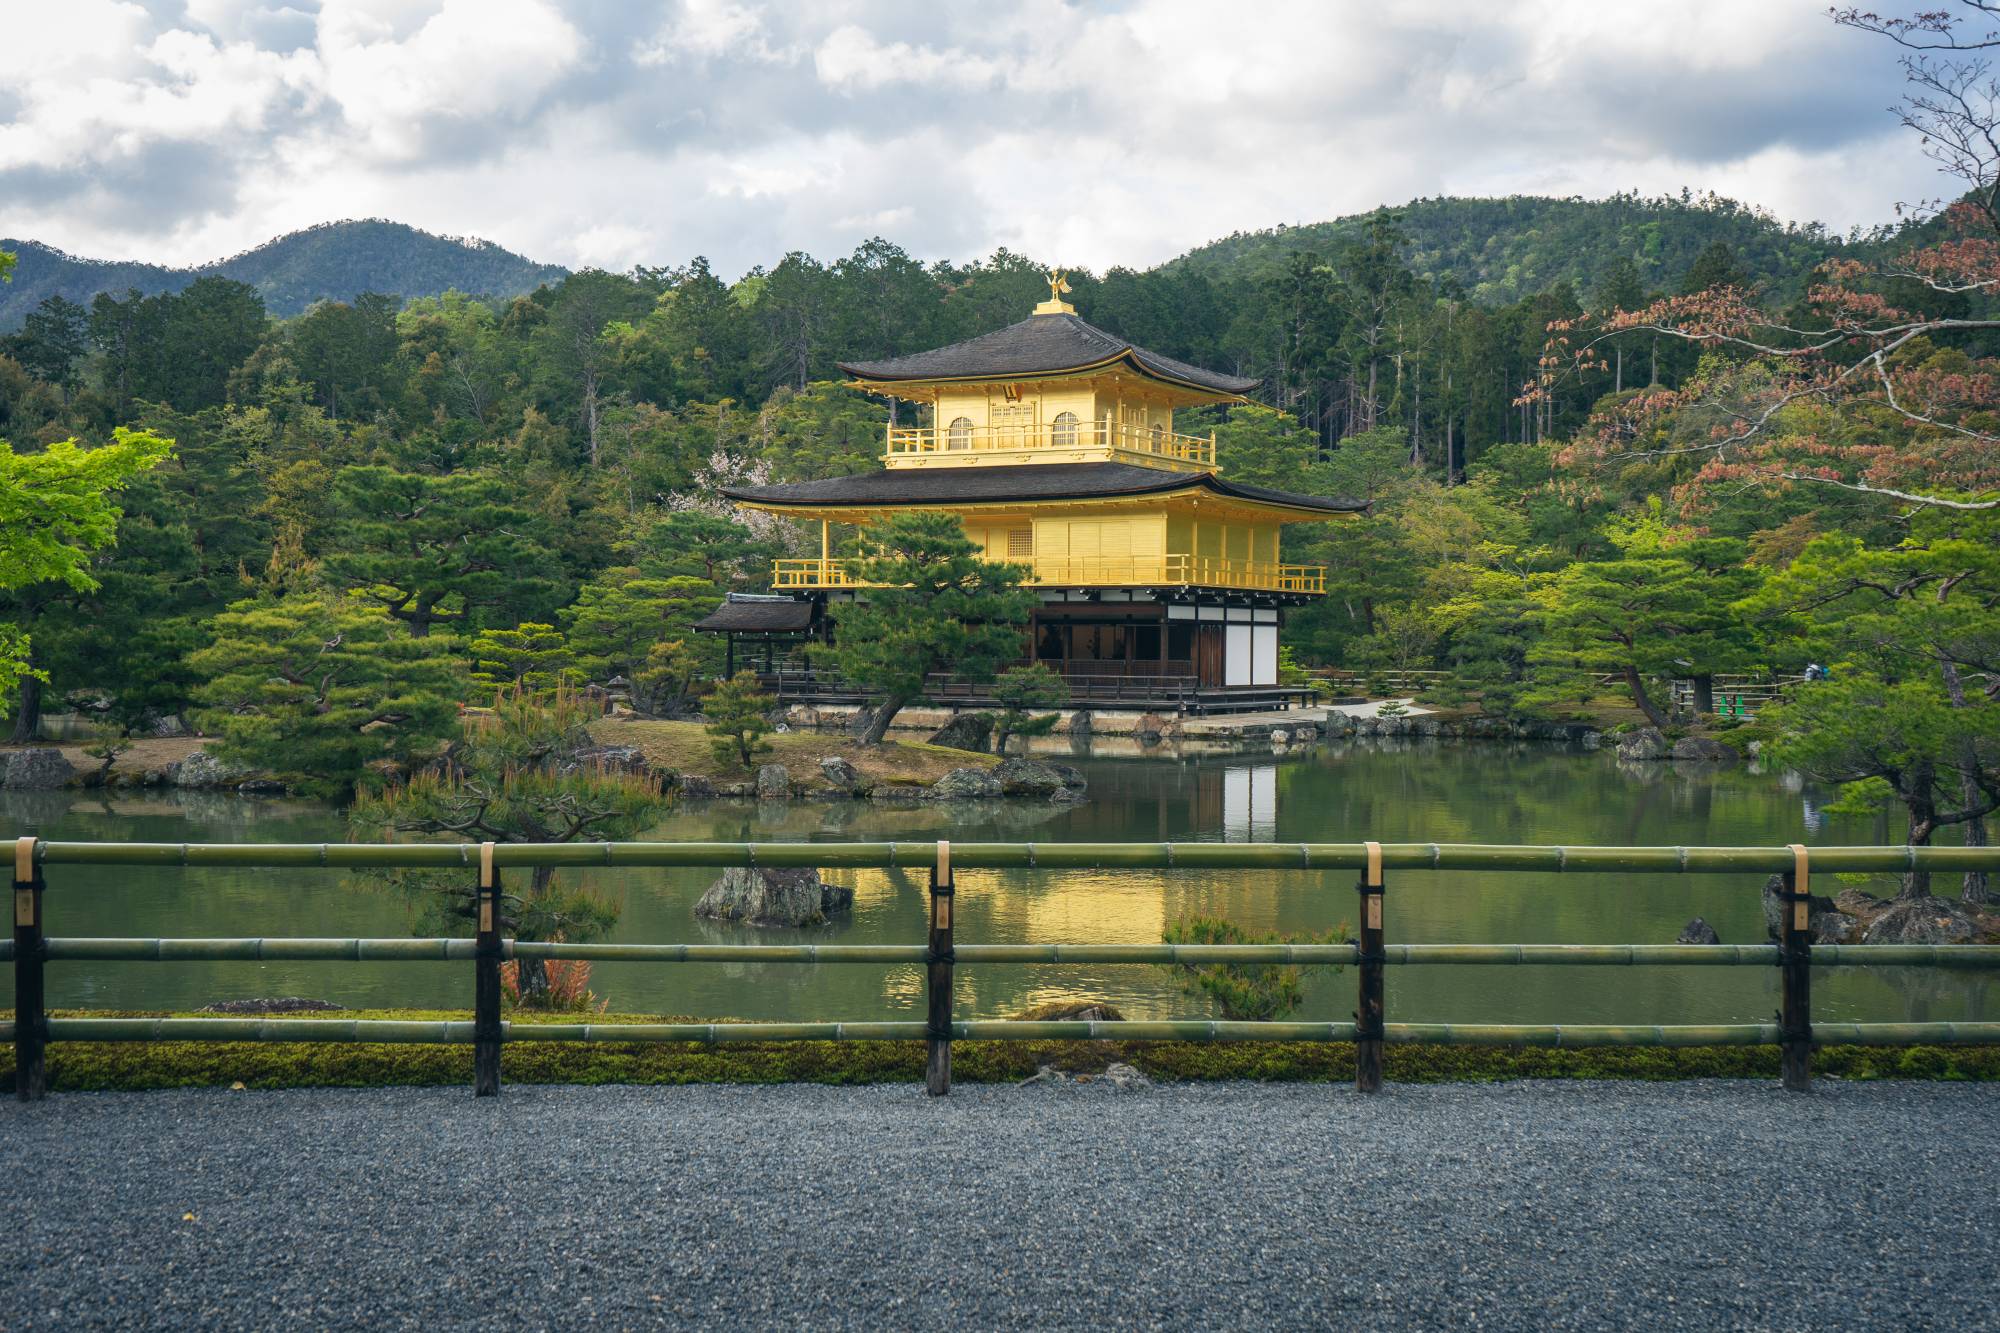 Thành phố Kyoto, nơi có những ngôi đền và chùa rực rỡ và đậm chất truyền thống của người Nhật. Bạn sẽ được chiêm ngưỡng những kiến trúc đẹp tuyệt vời, những con đường ven sông lãng mạn và món ăn đặc trưng của Kyoto. Hãy thư giãn và tận hưởng chuyến đi tuyệt vời này.